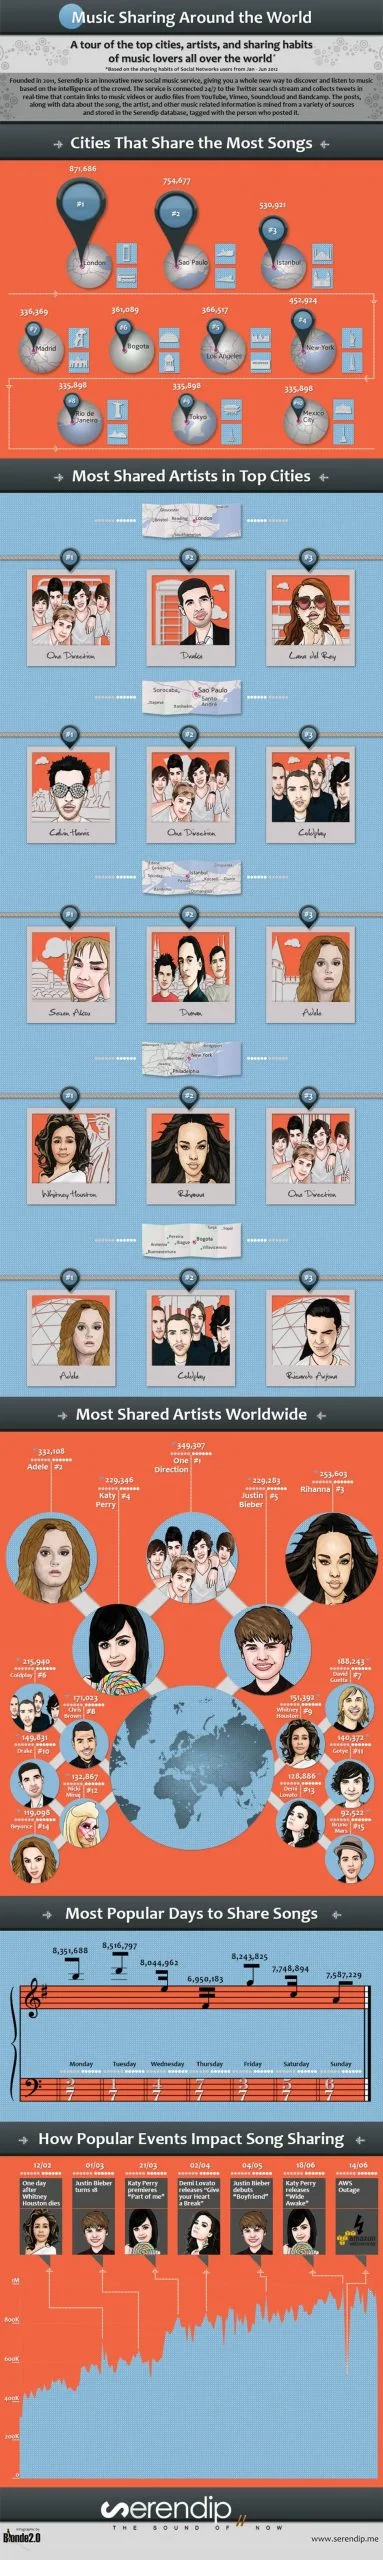 Infographie : musique et réseaux sociaux, les chiffres illustrés